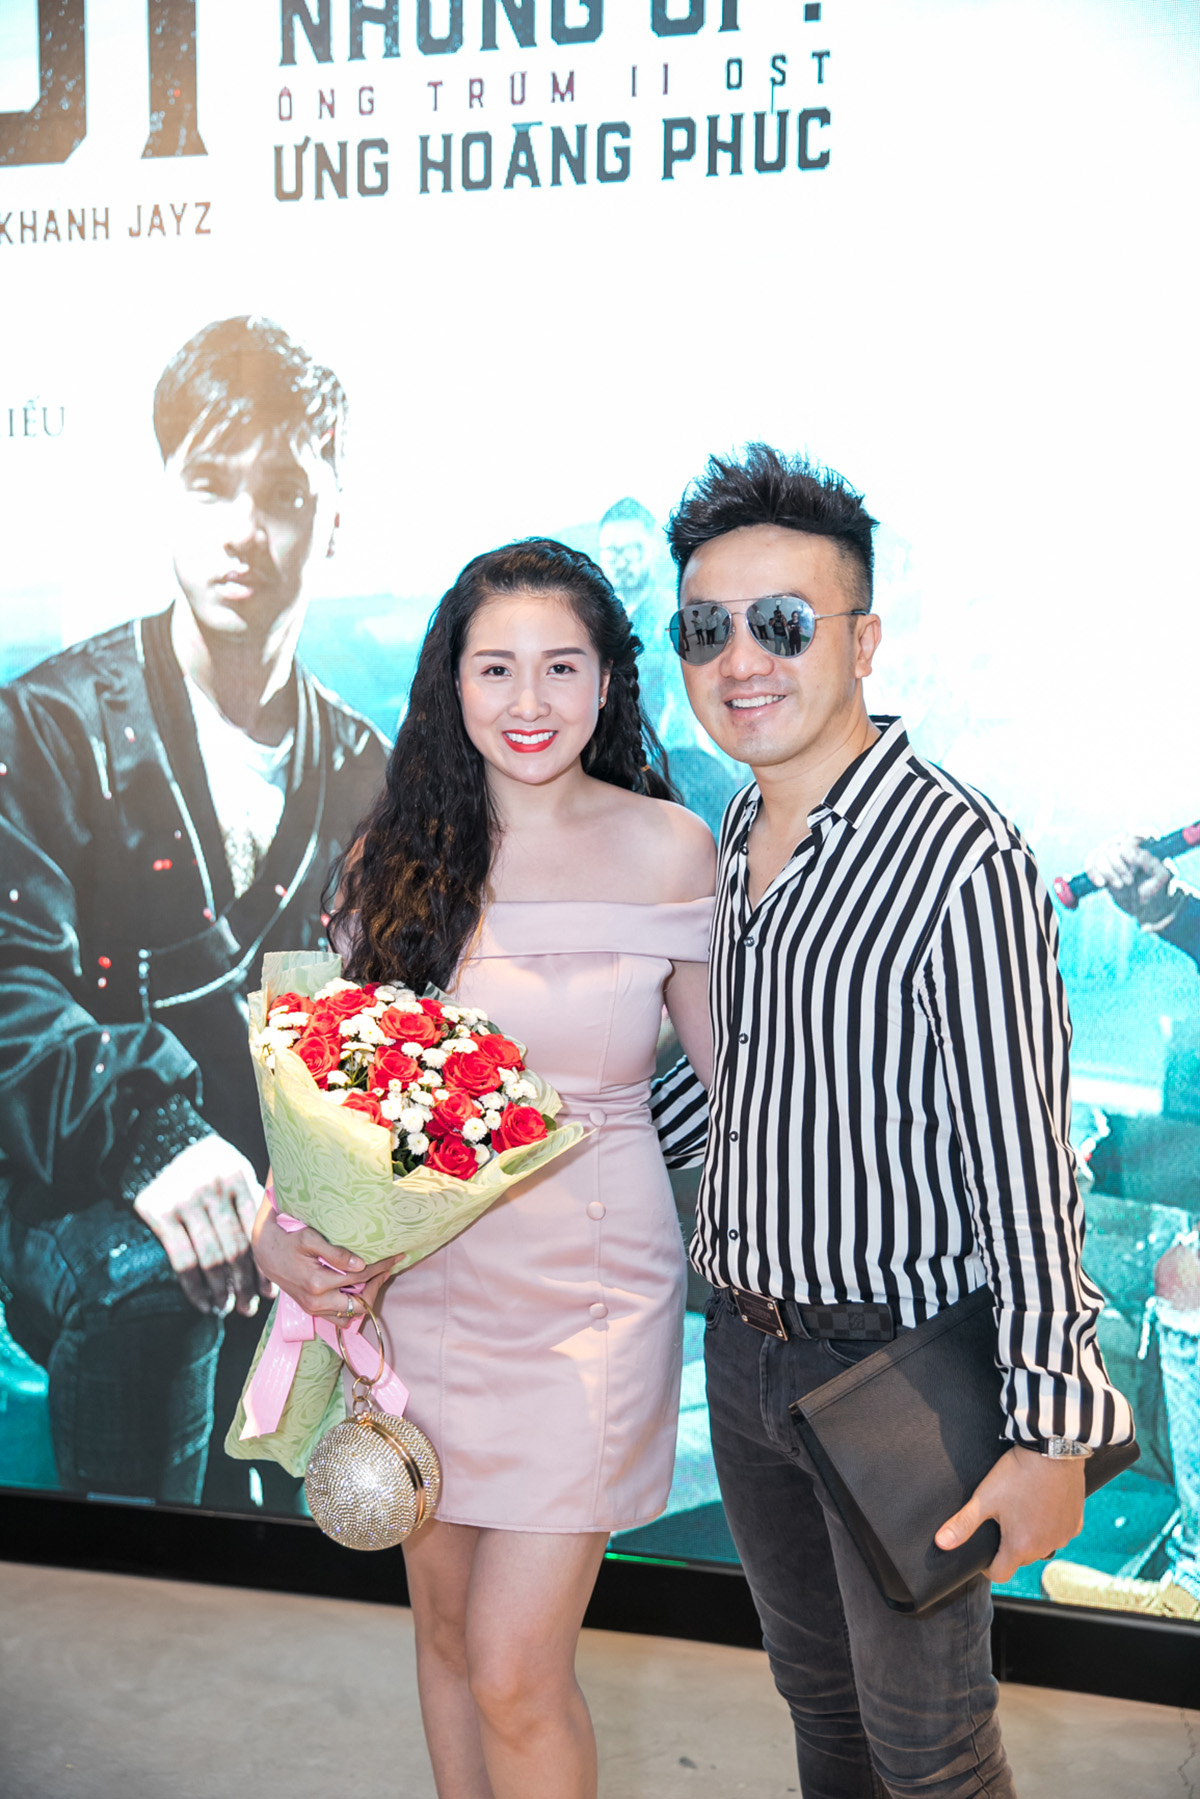 Thu Thuỷ, Phạm Quỳnh Anh chúc mừng Ưng Hoàng Phúc ra mắt MV nhạc phim